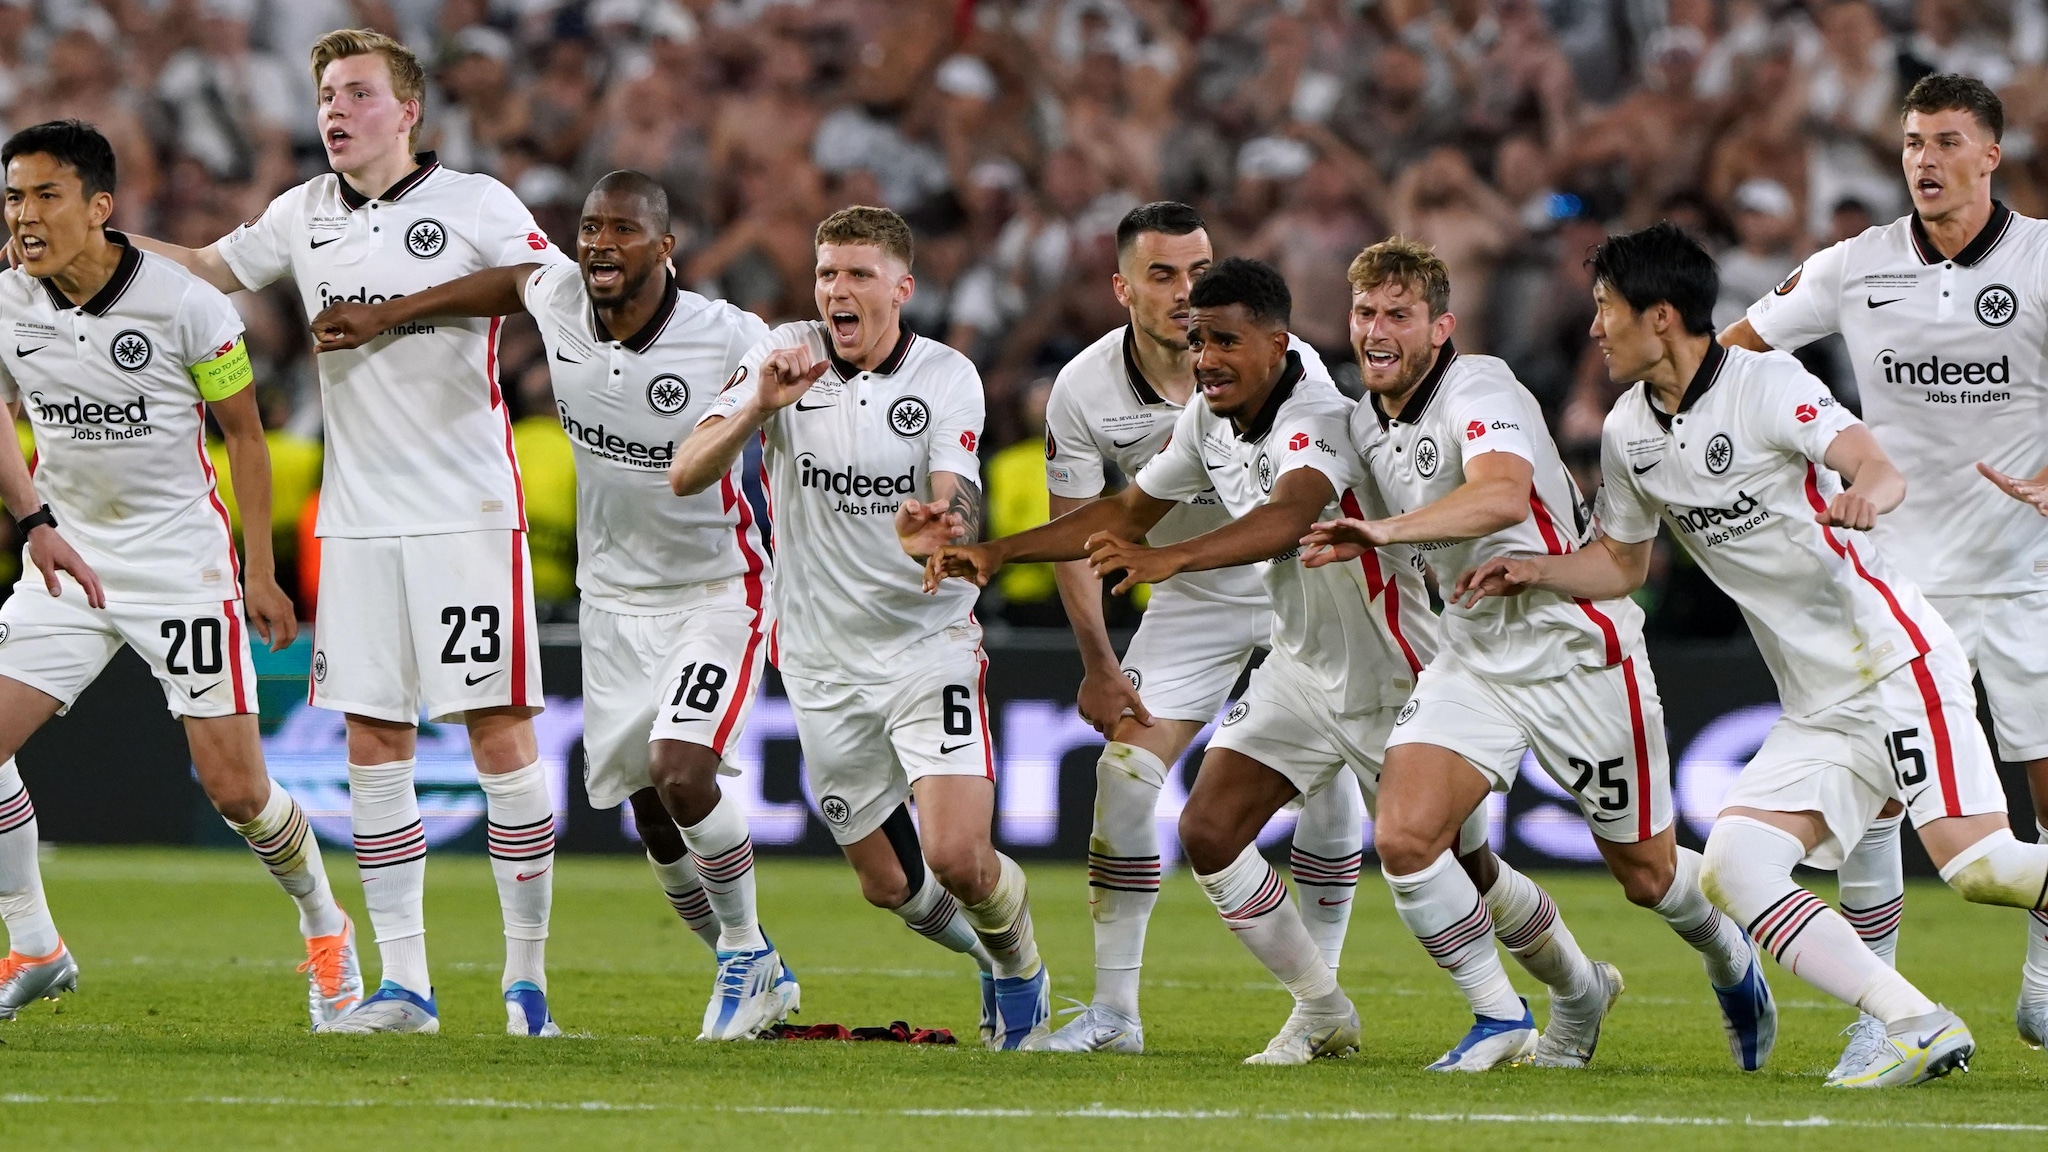 Chuyên gia phân tích trận chung kết Europa League: Frankfurt 5 Rangers 4 trong cả 2 lượt trận